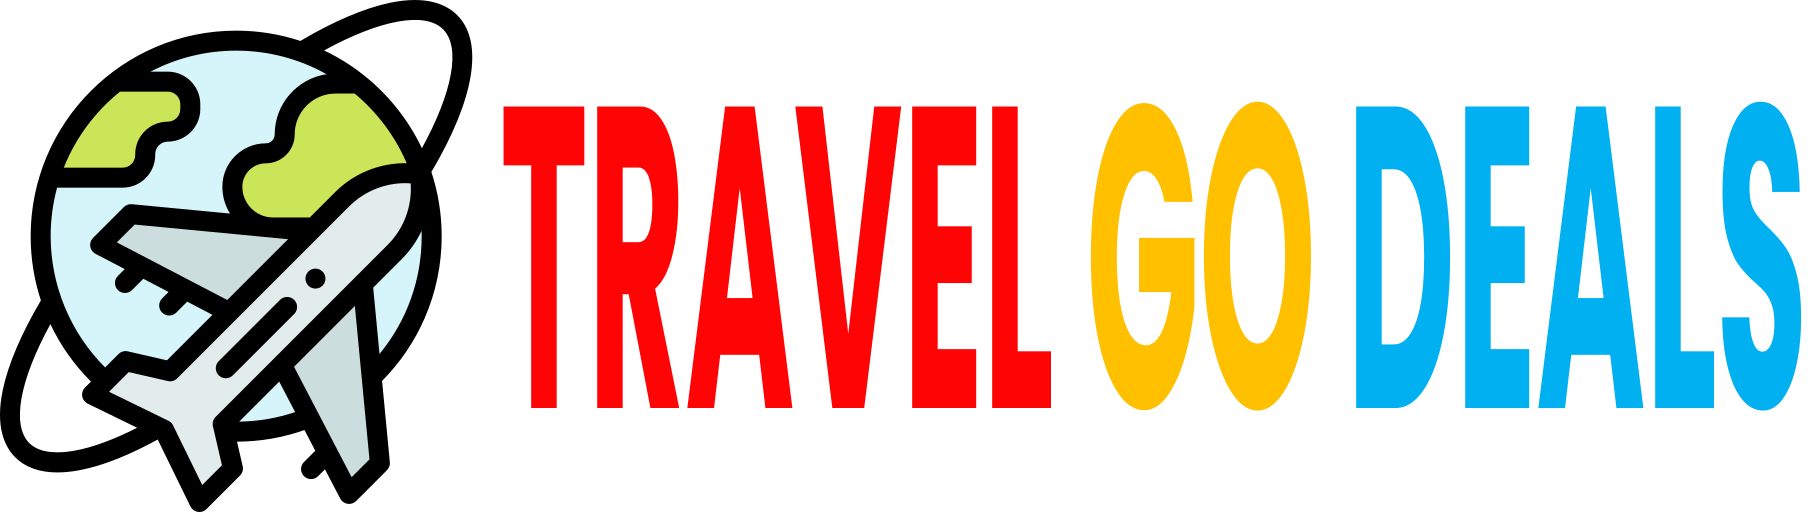 travelgodeals website